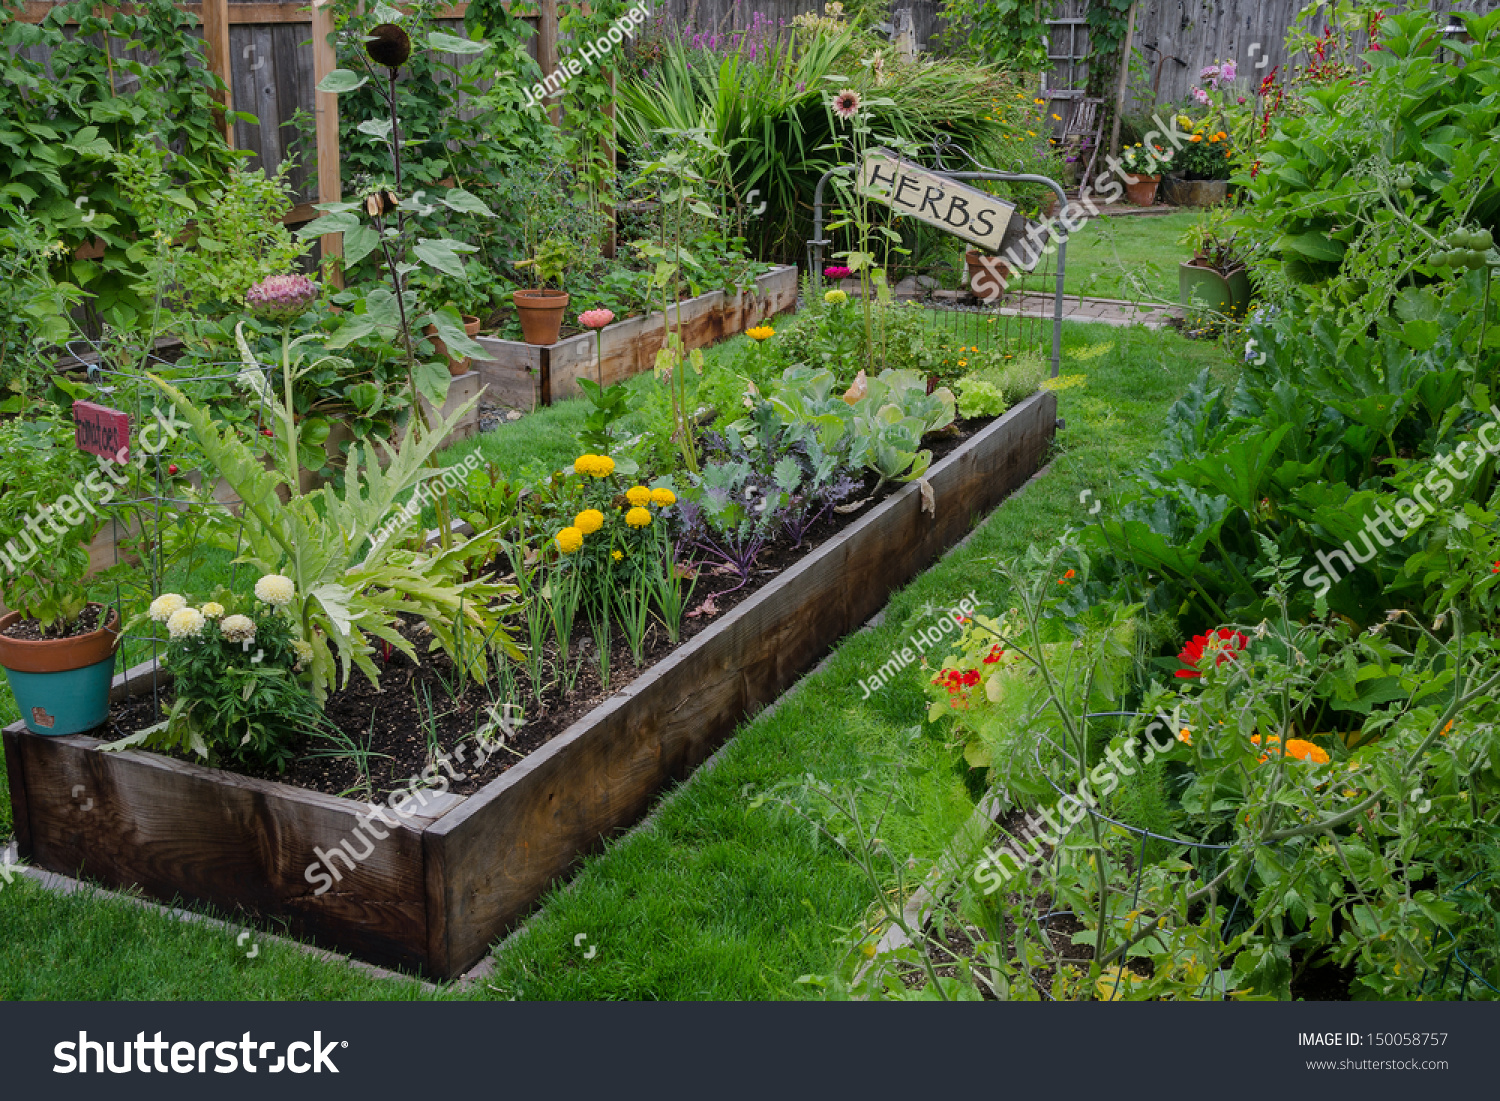 43,458 Herb garden bed Images, Stock Photos & Vectors | Shutterstock